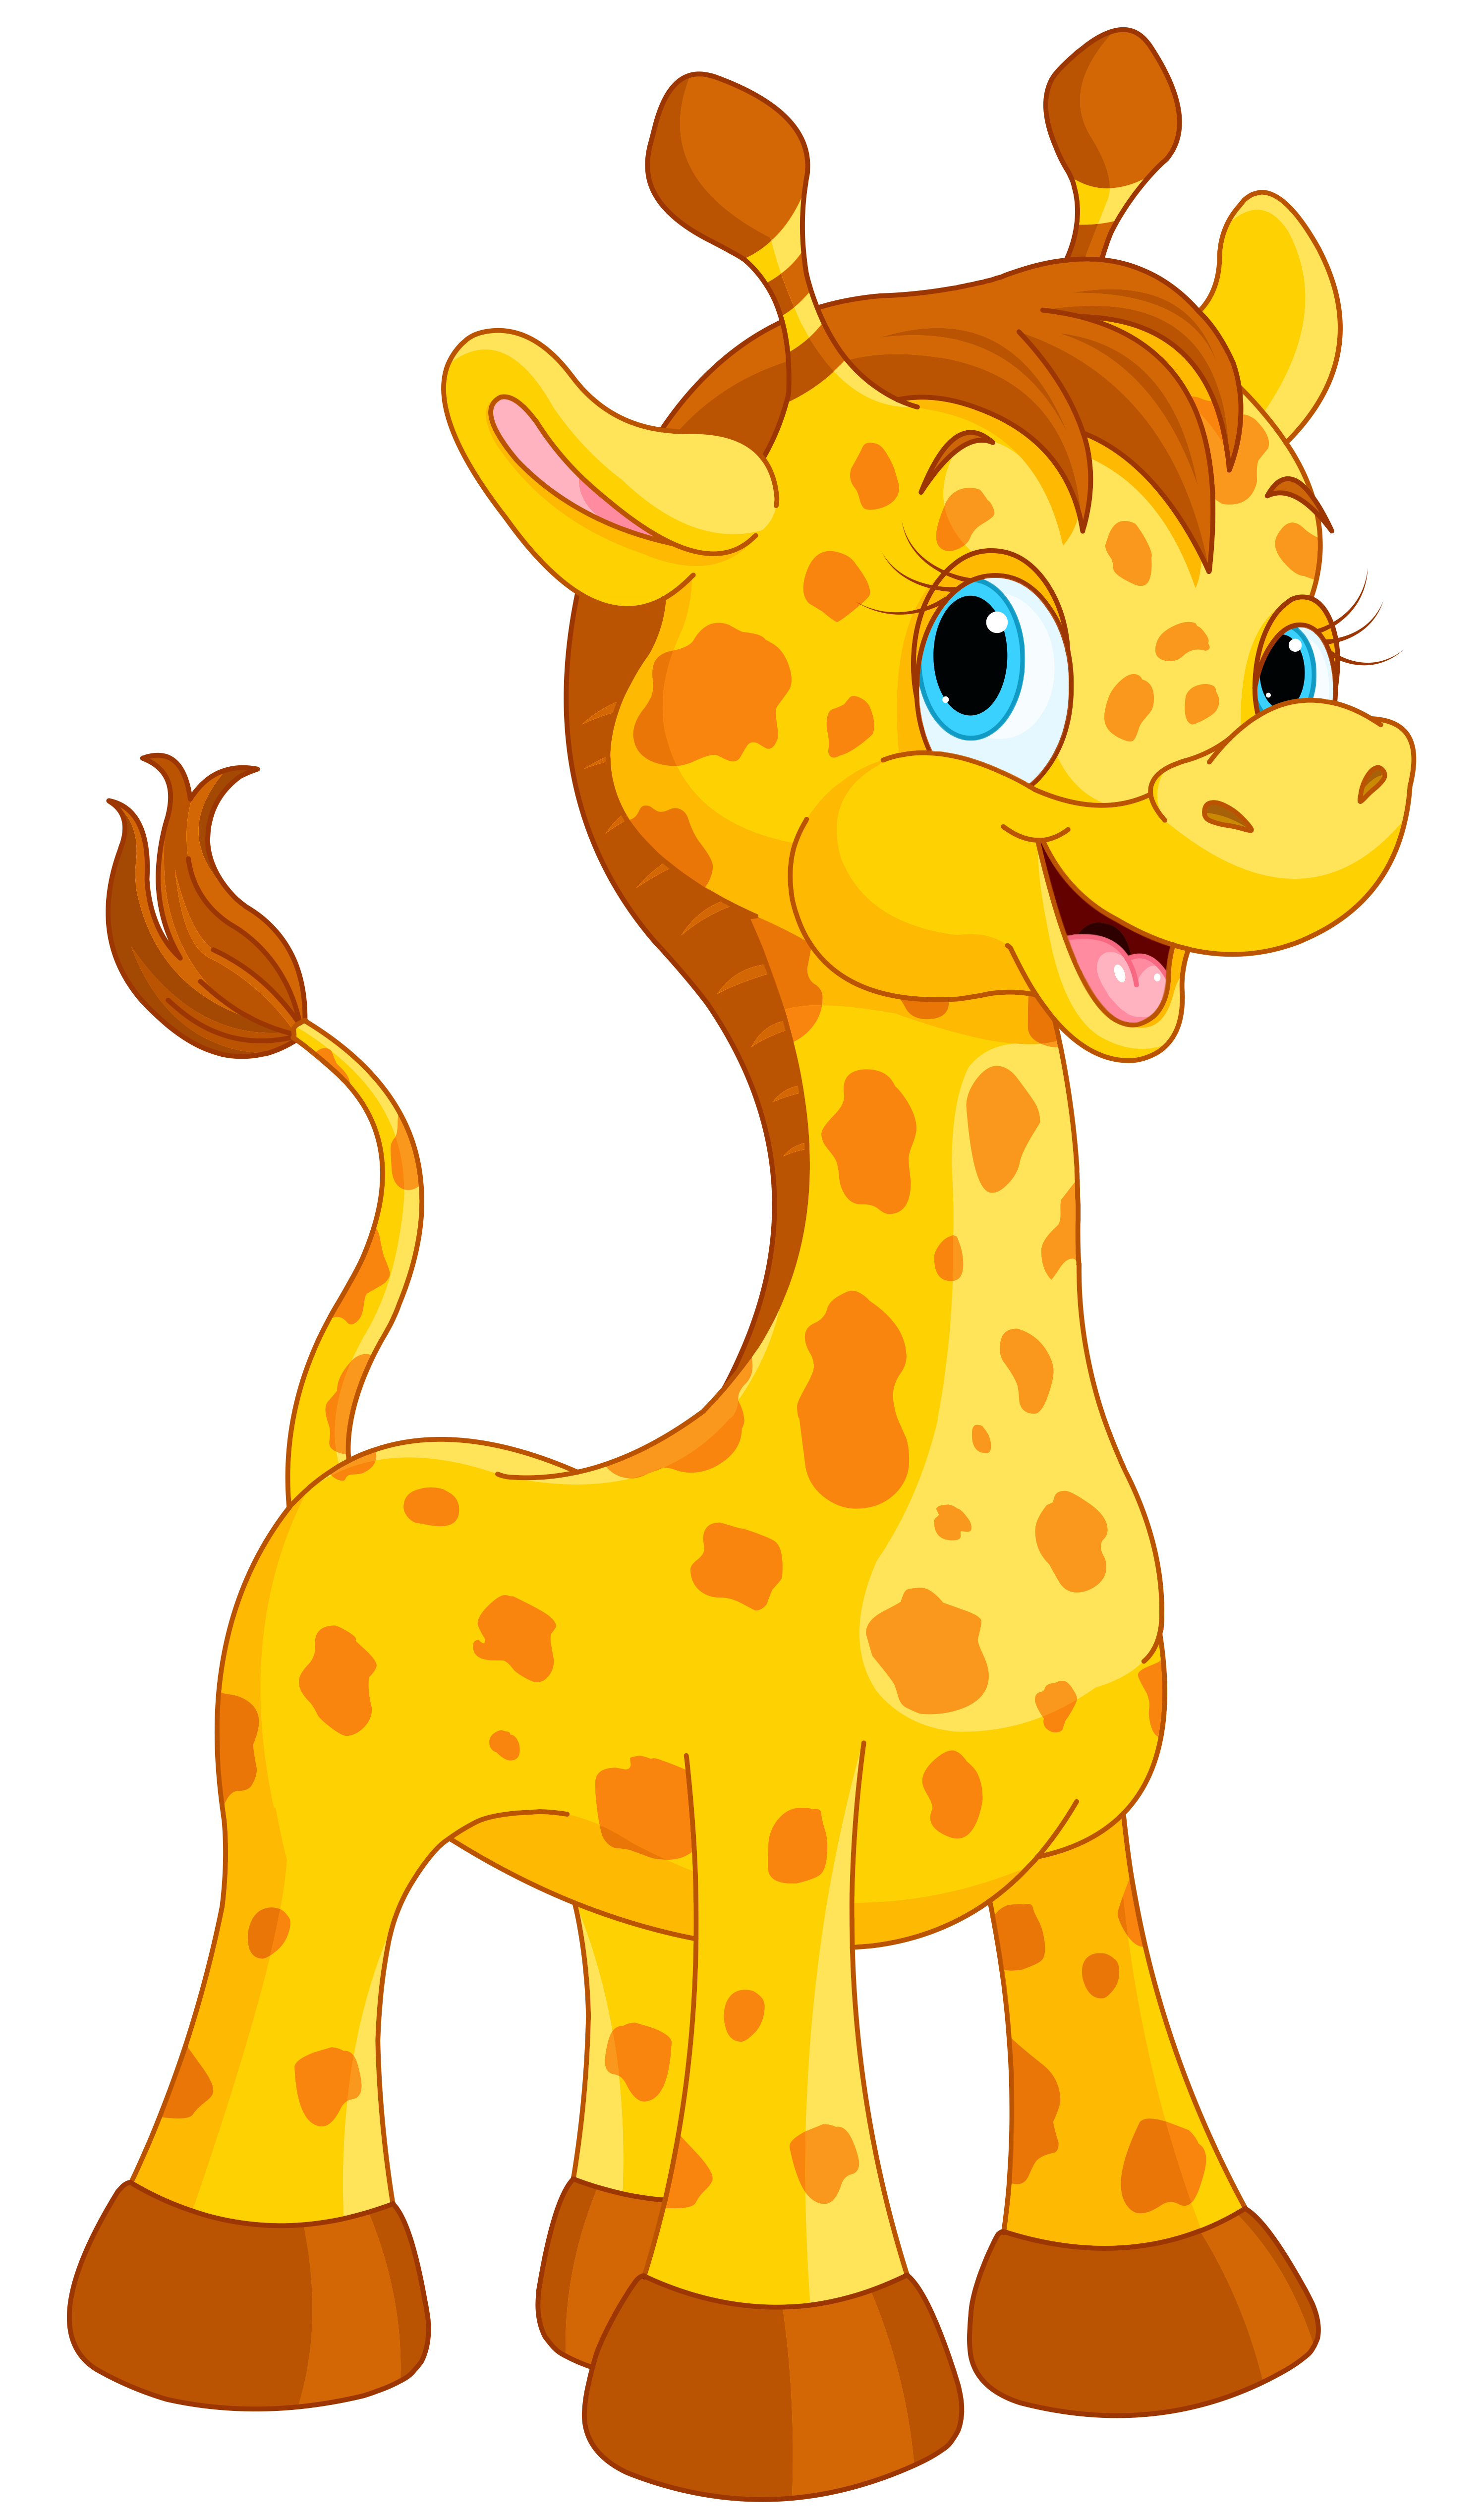 Hi clipart animal hawaiian. Cute giraffe cartoon png